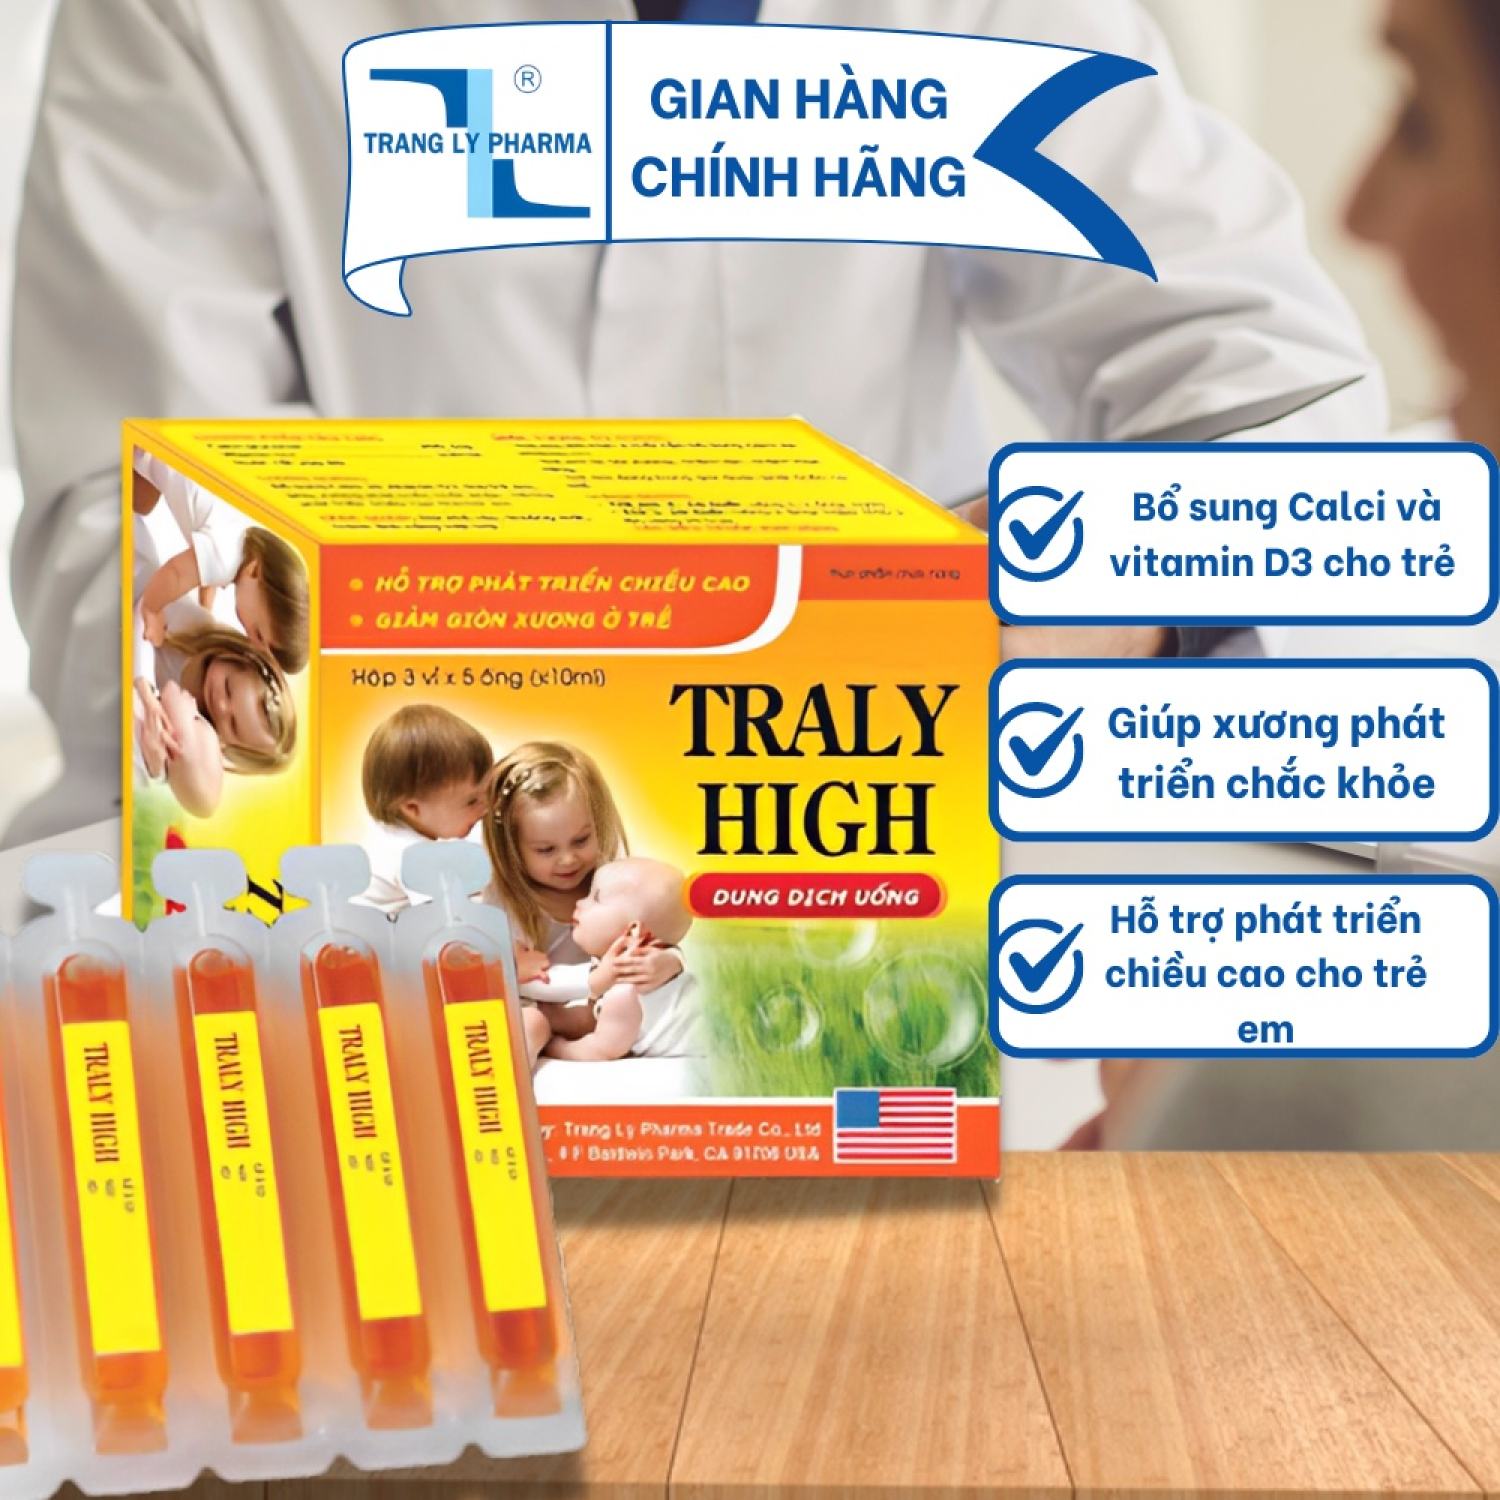 Ống uống Traly High bổ sung Calci và vitamin D3 cho trẻ em, giúp xương phát triển chắc khỏe hộp 15 ống Trang Ly Pharma